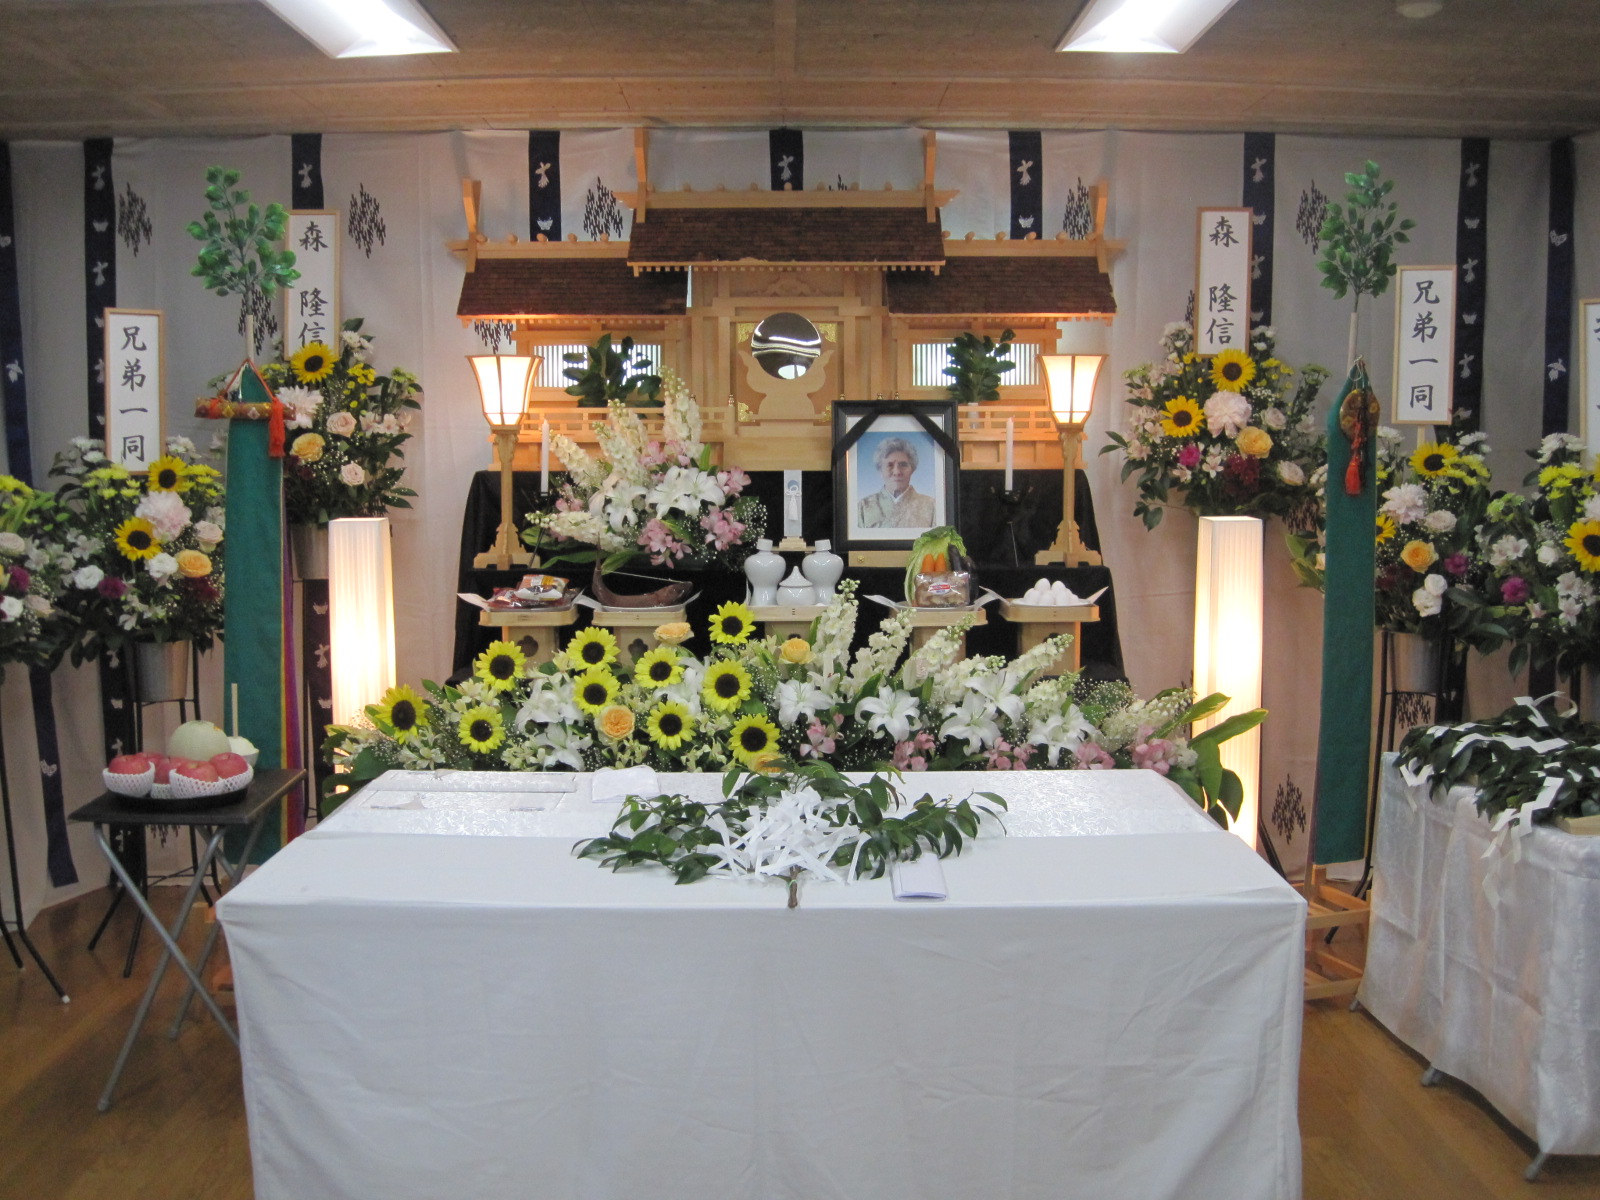 二葉典礼有限会社 兵庫県神戸市長田区 の葬式 葬儀 葬儀会社 家族葬 安心できる葬儀ガイド